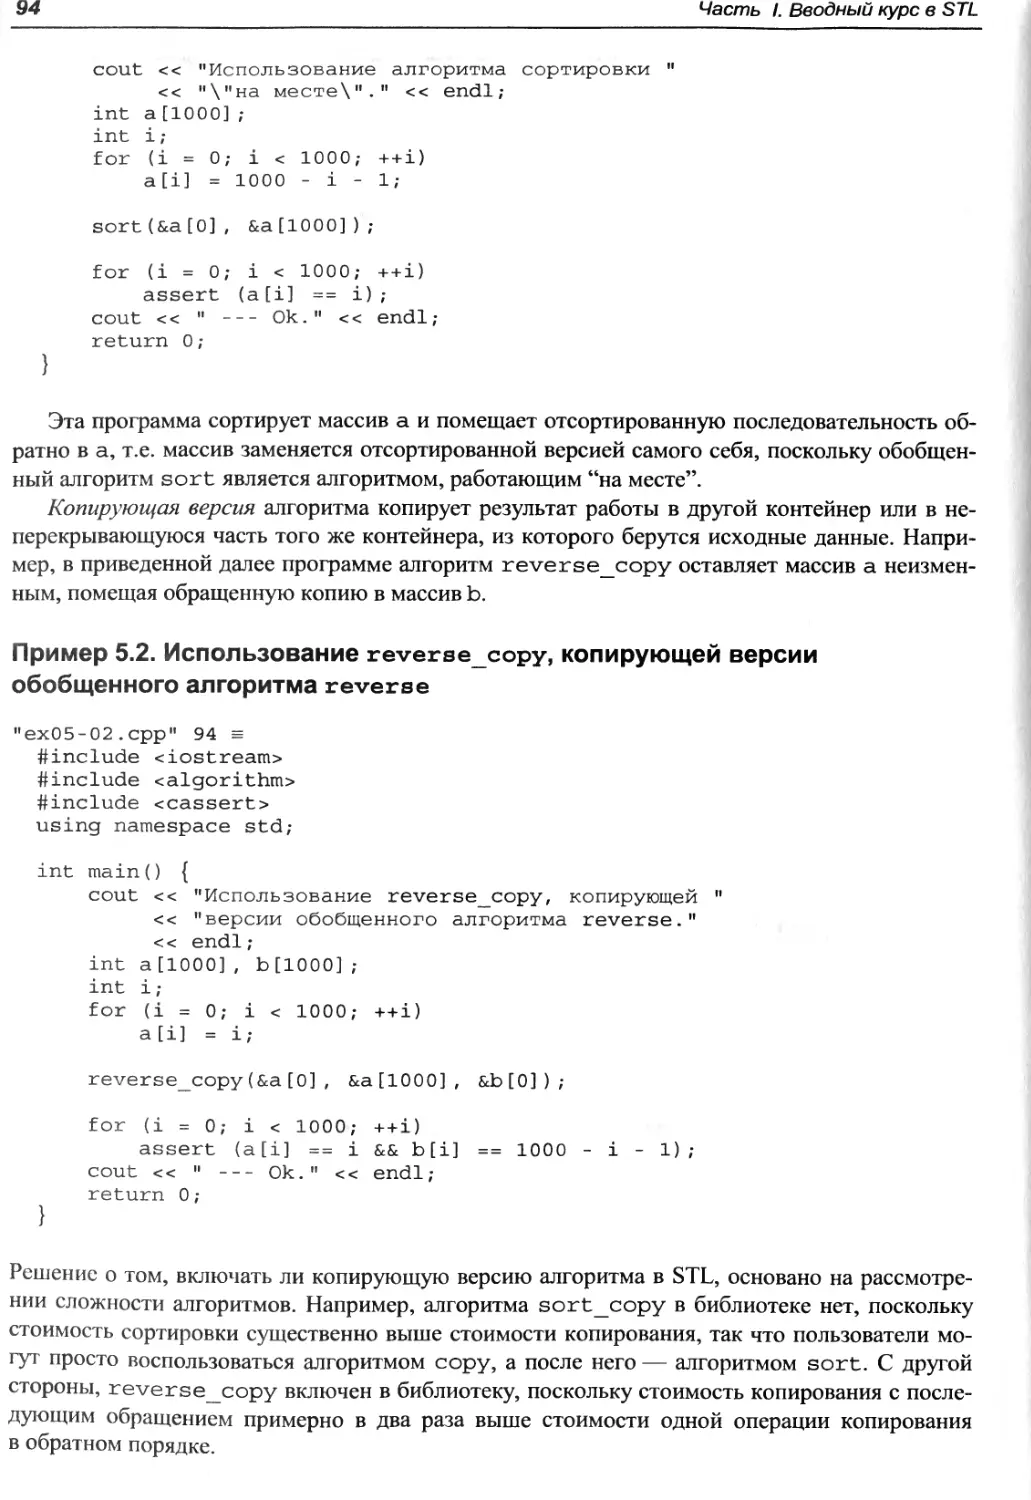 Пример 5.2. Использование reverse_copy, копирующей версии обобщенного алгоритма reverse